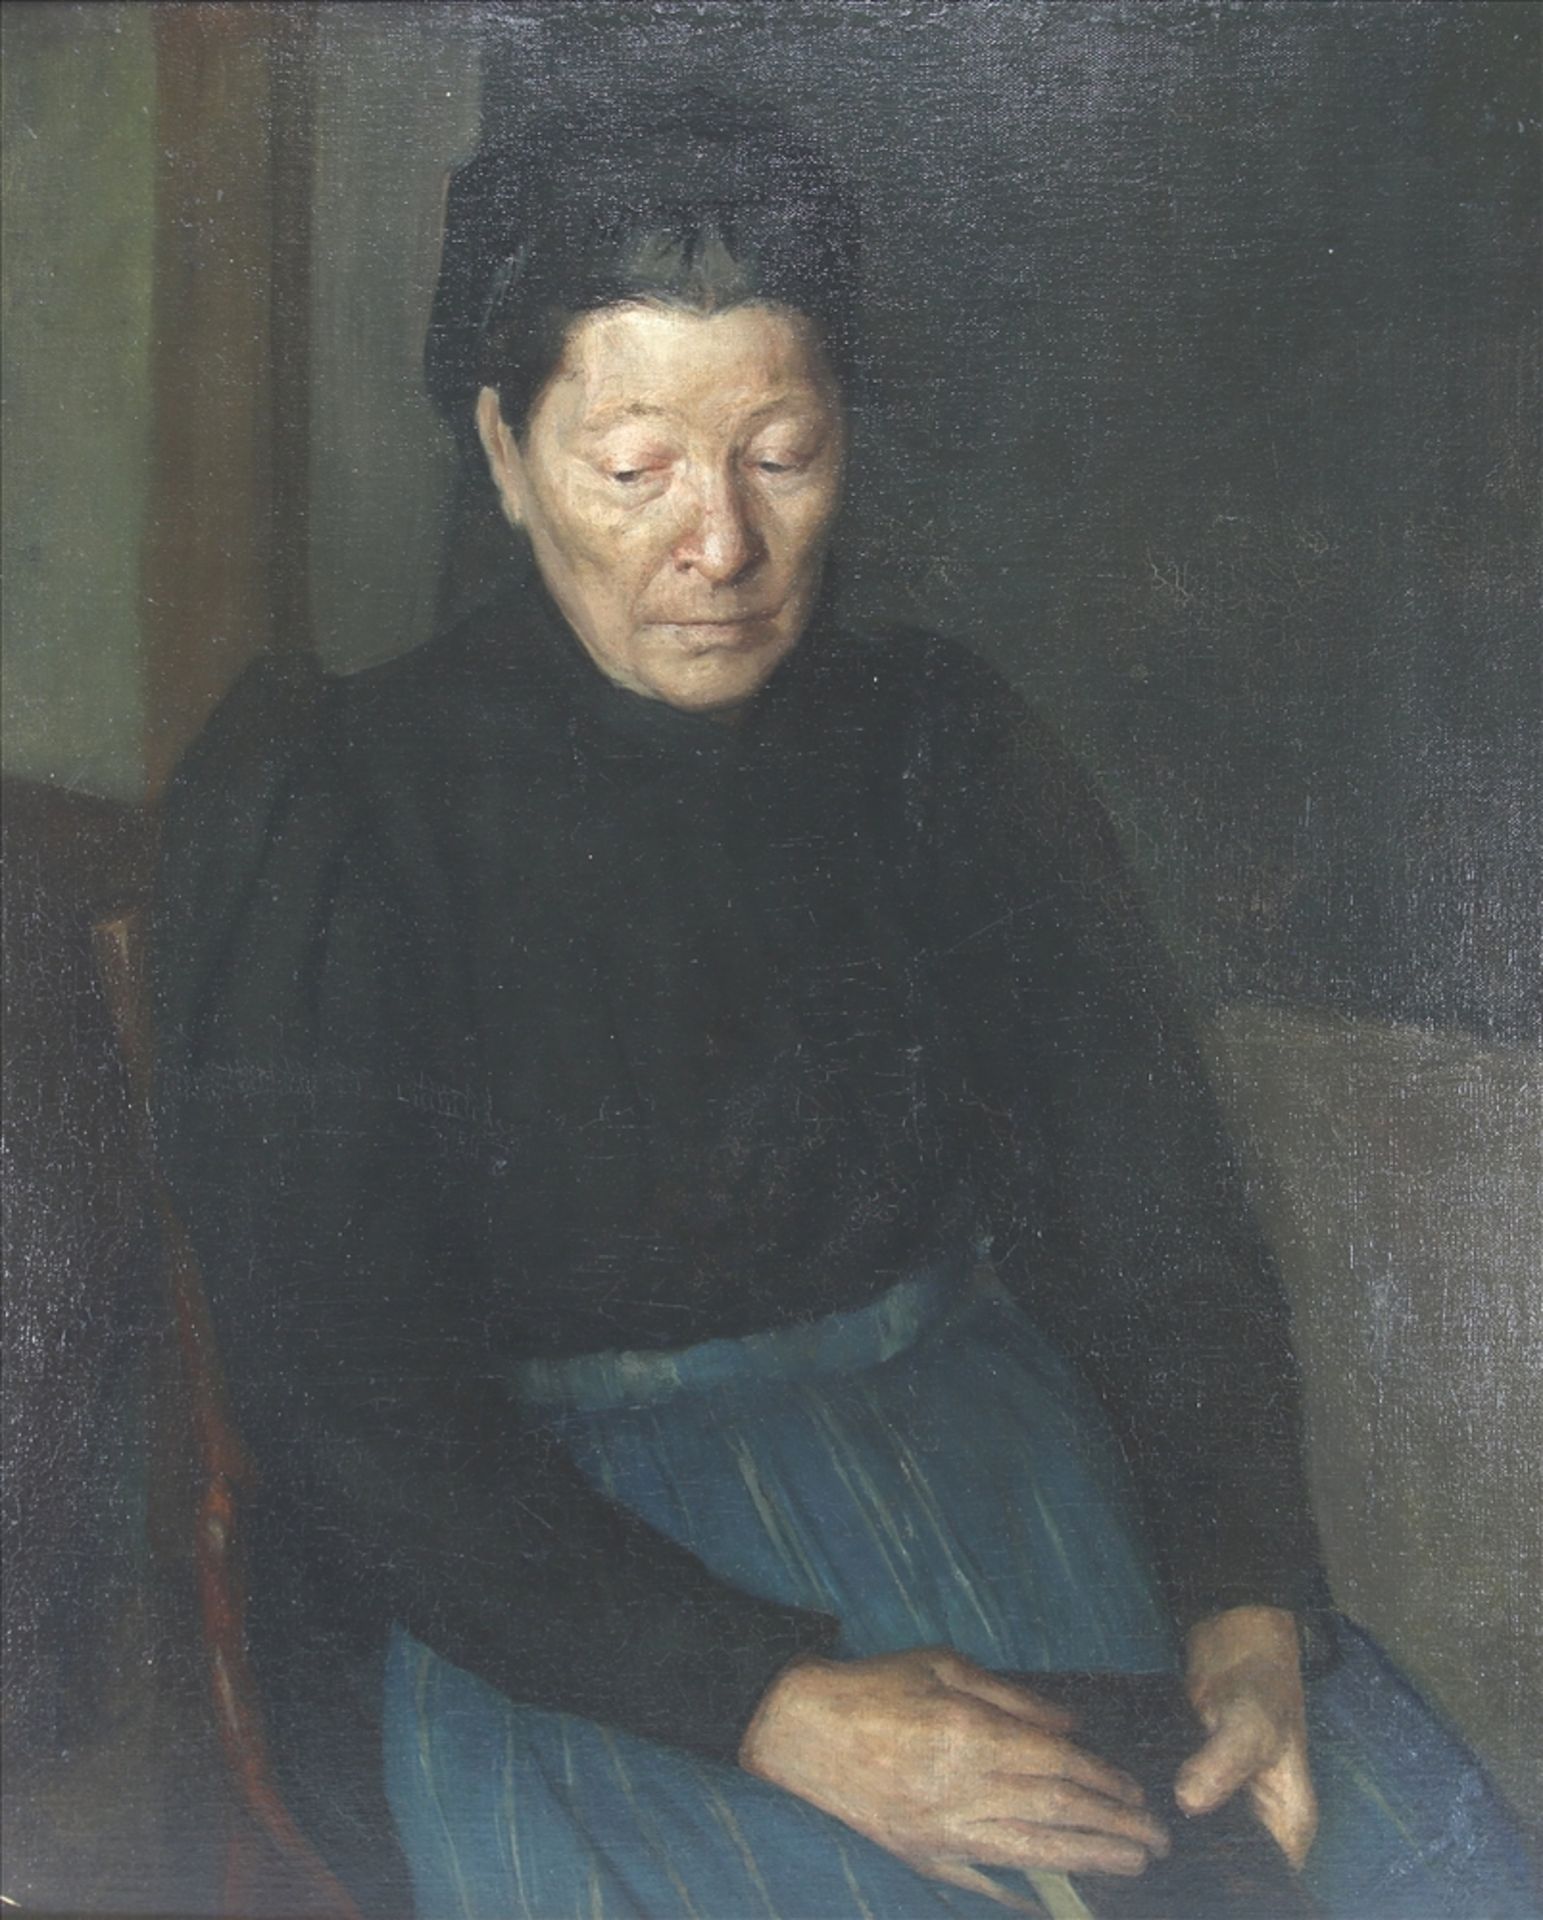 Portrait der Großmutter Um 1900. Hinten schwer lesbar bezeichnet "Rippert". Öl auf Leinwand. Größe